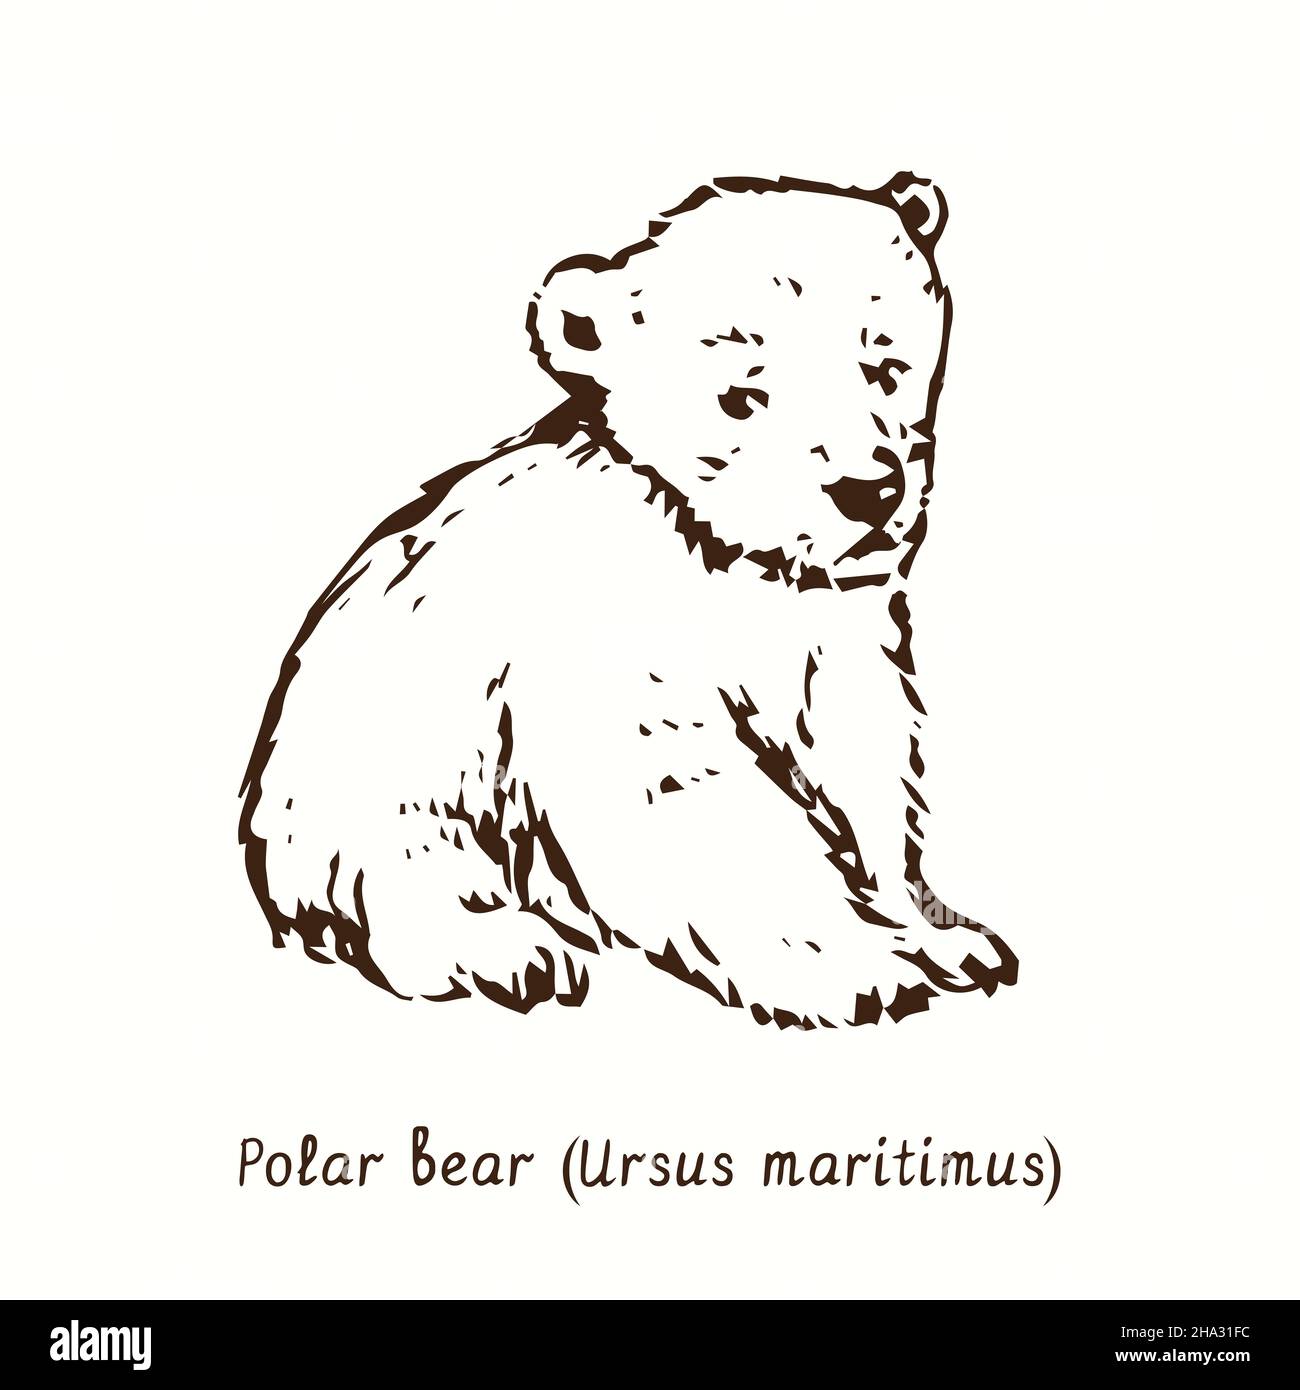 Cucciolo di orso polare (Ursus maritimus) seduto. Disegno in bianco e nero in legno. Foto Stock